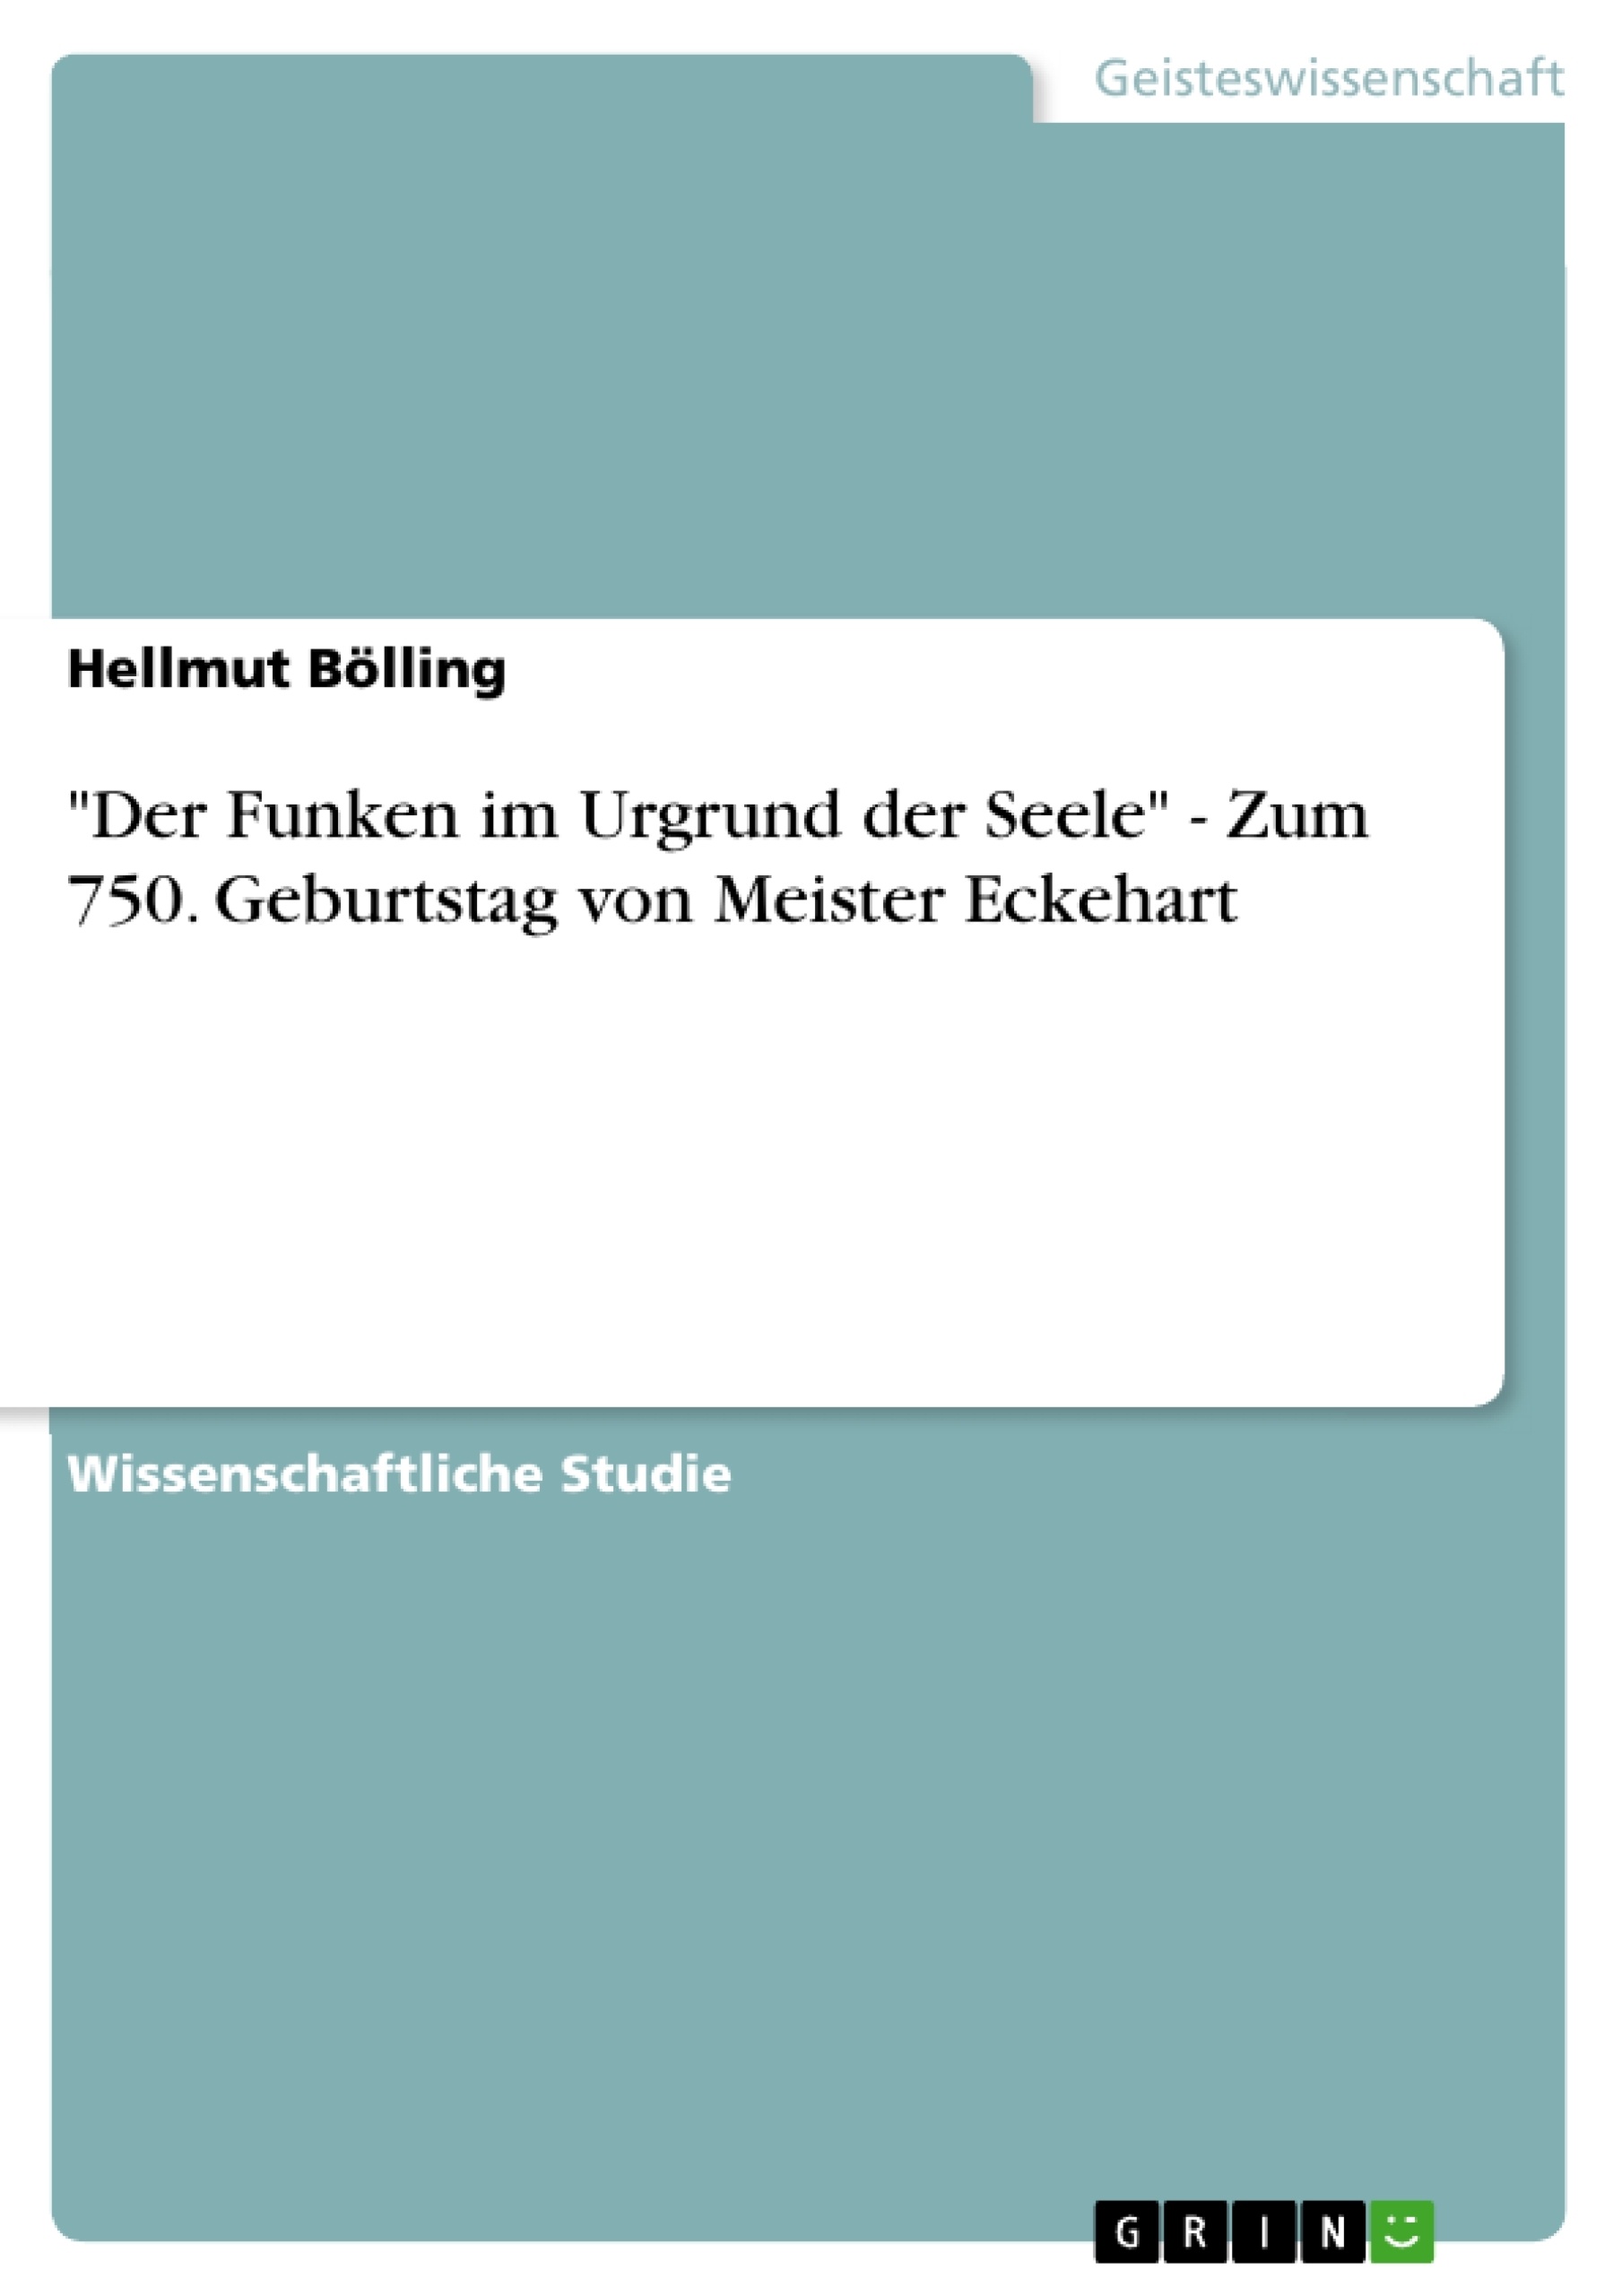 Titel: "Der Funken im Urgrund der Seele" - Zum 750. Geburtstag von Meister Eckehart